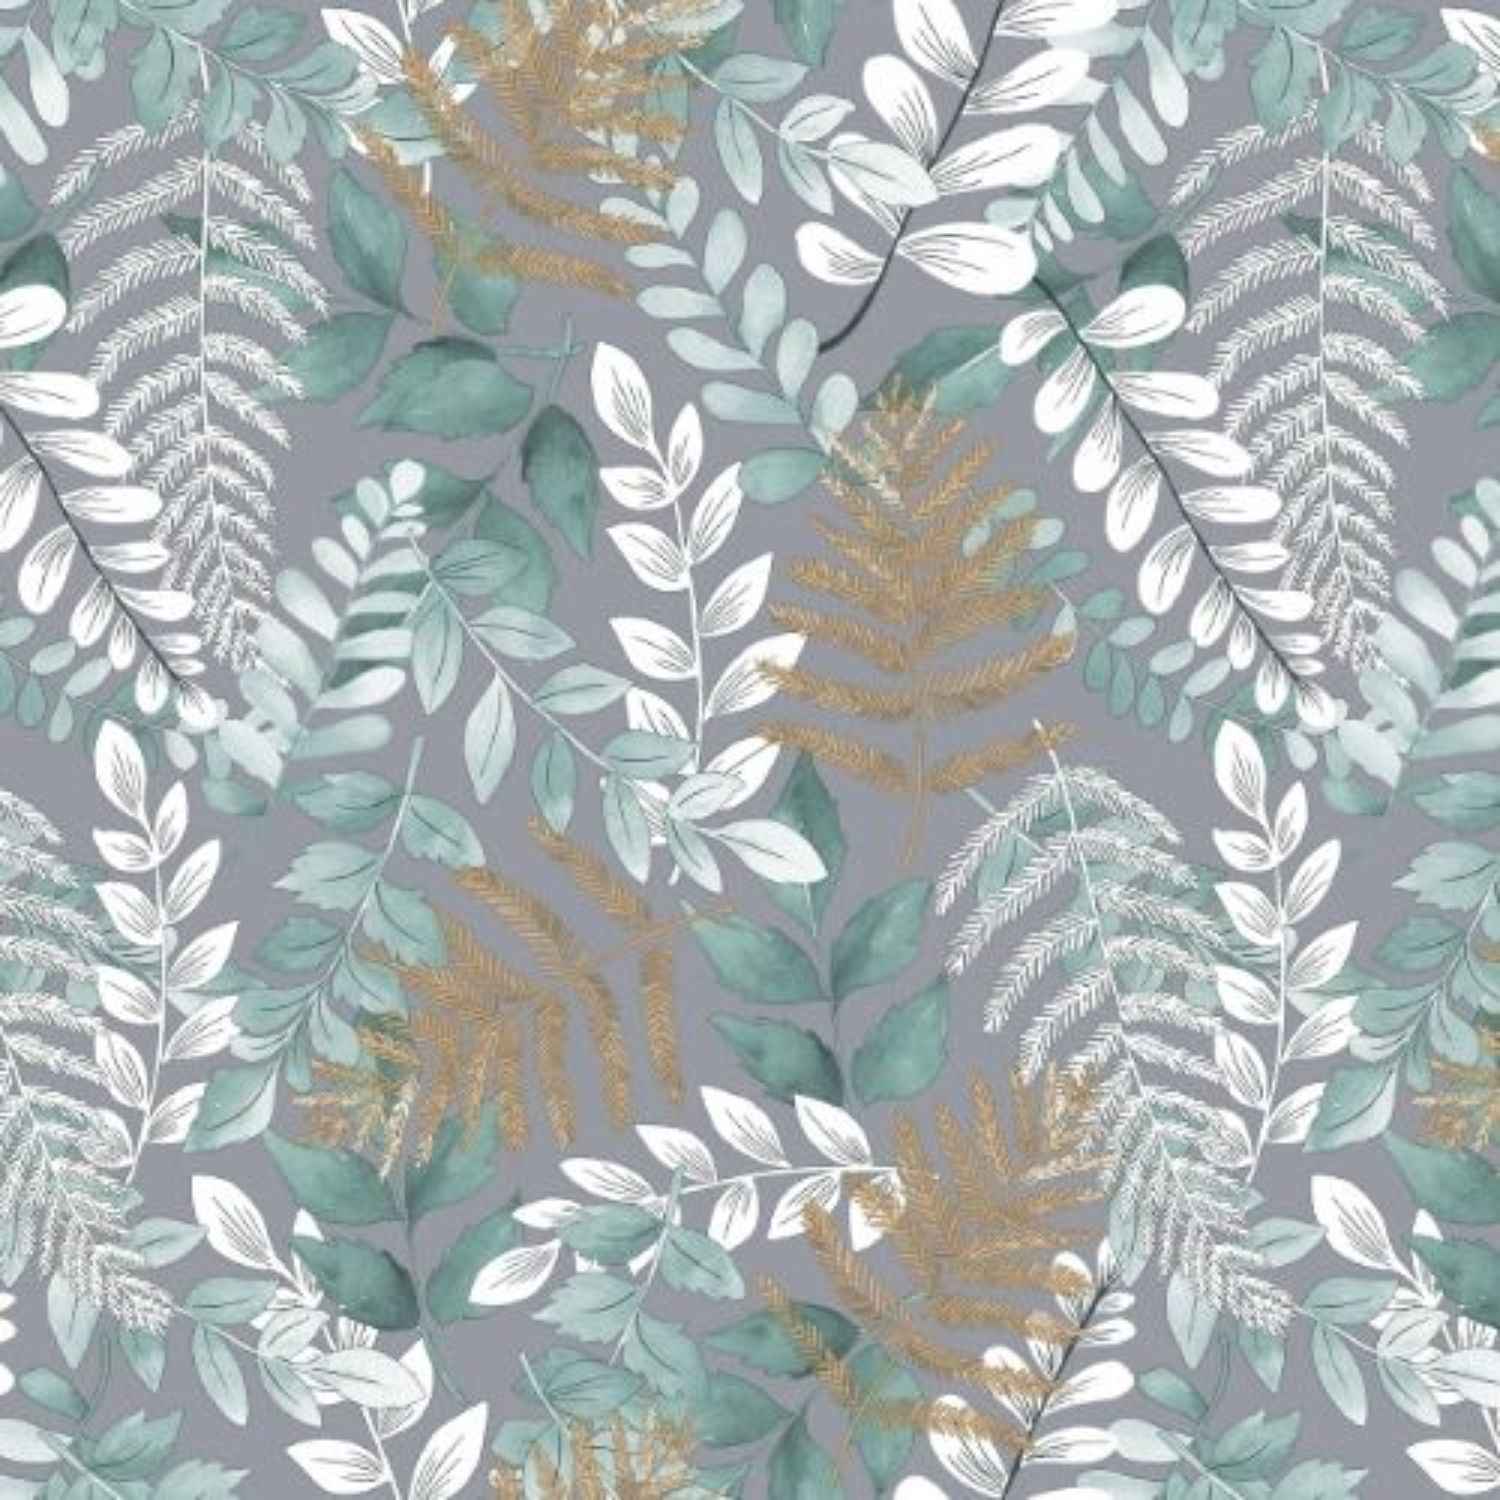 foglia-telo-arredo-copritutto-tuttofare-foglie-tropicali-felci-verde-beige-bianco-pattern